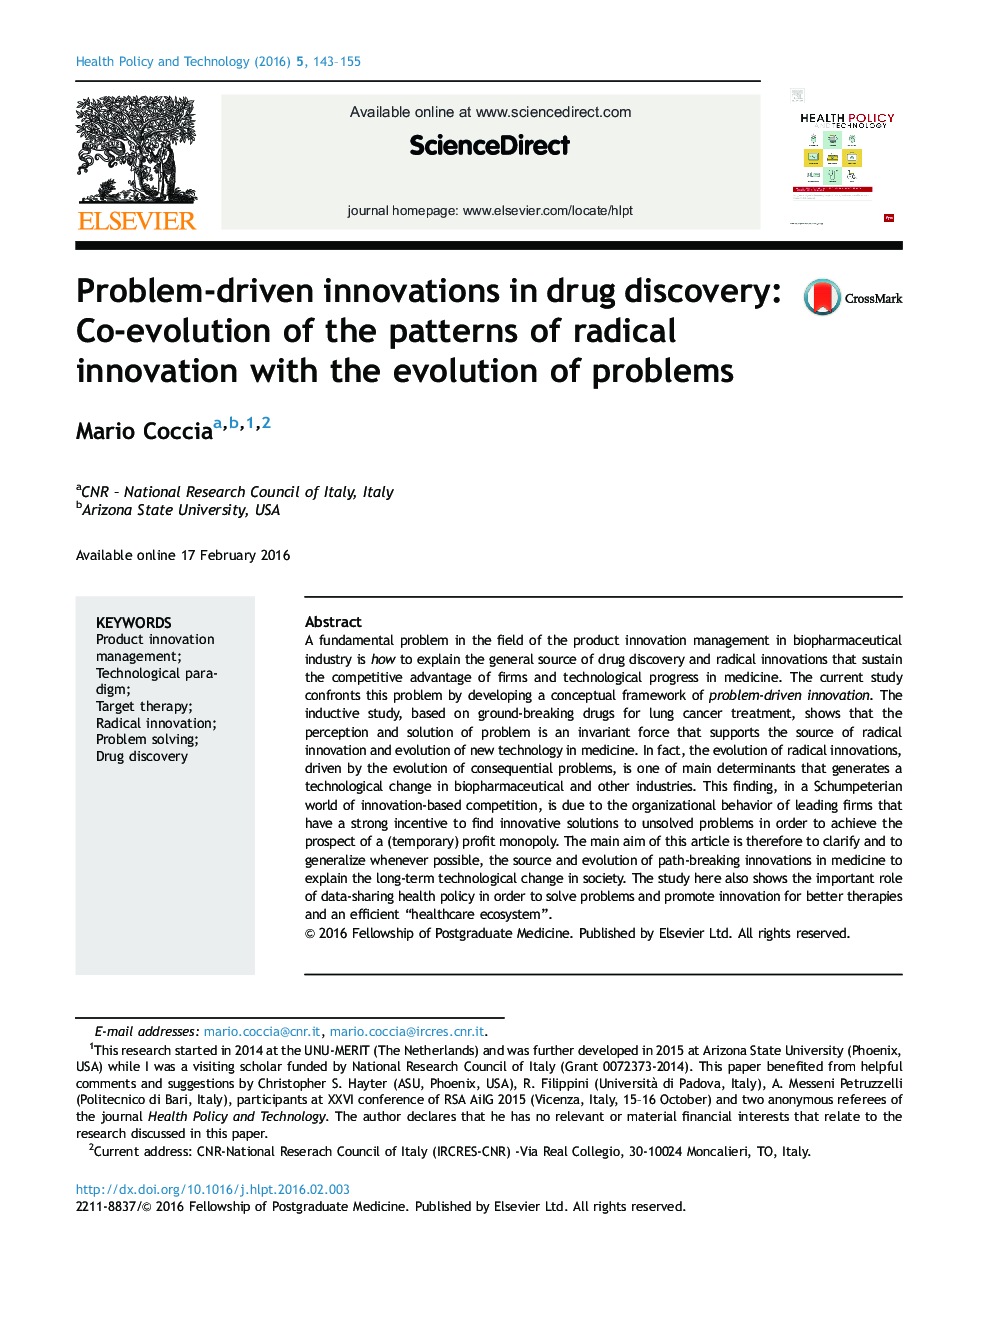 نوآوری های مساله محور در کشف مواد مخدر: شرکت تحول الگوهای نوآوری رادیکال با تحول مسائل